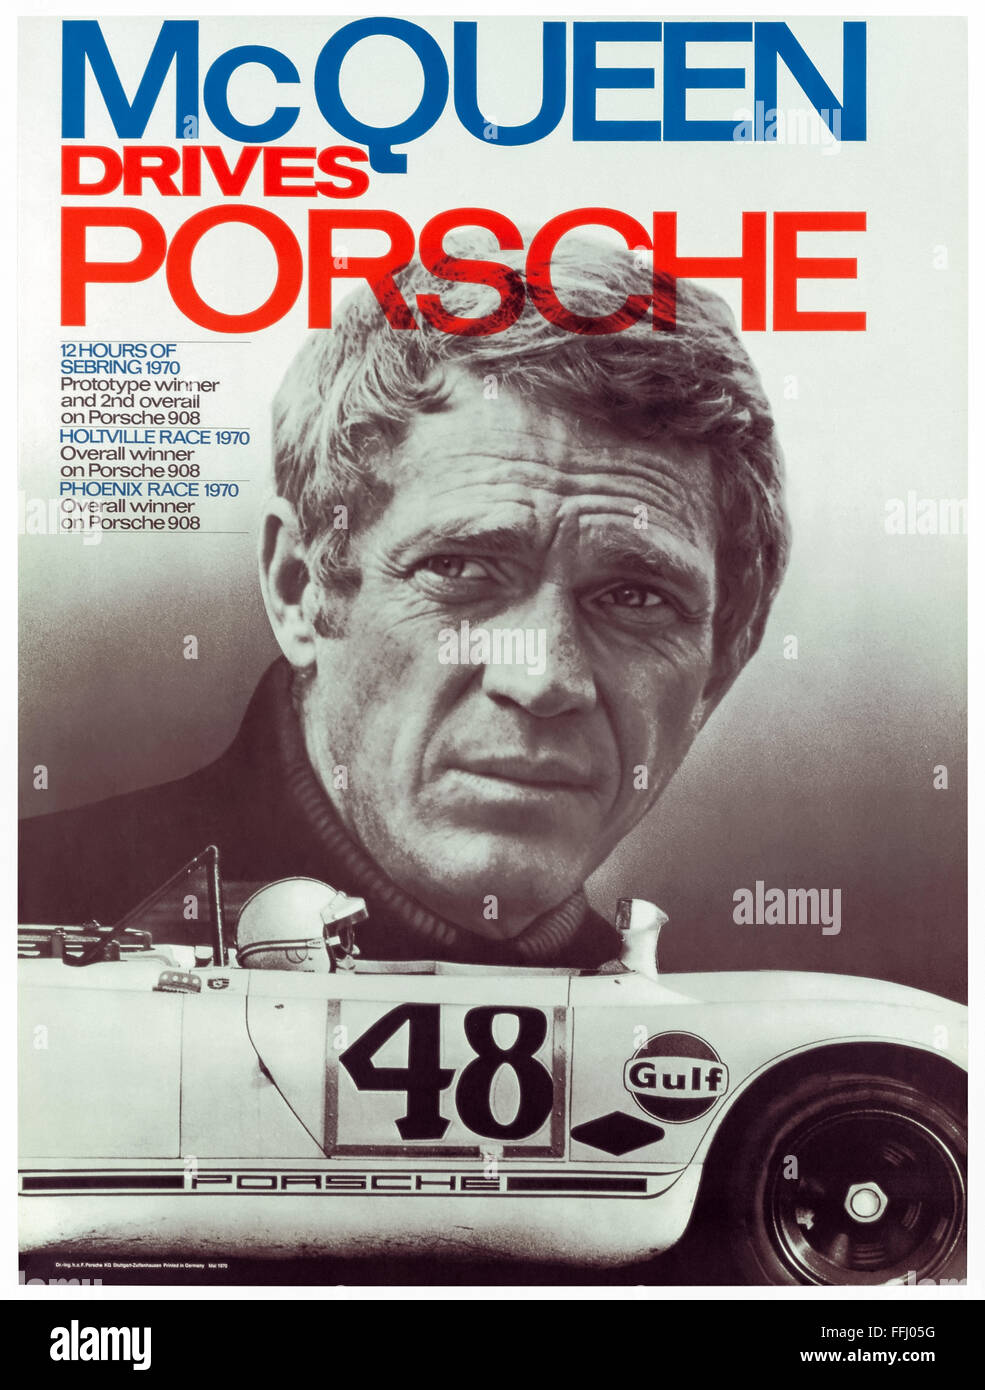 "McQueen fährt Porsche" Filmplakat für "Le Mans" unter der Regie von Lee H. Katzin und 1971 veröffentlicht. Siehe Beschreibung für mehr Informationen. Stockfoto